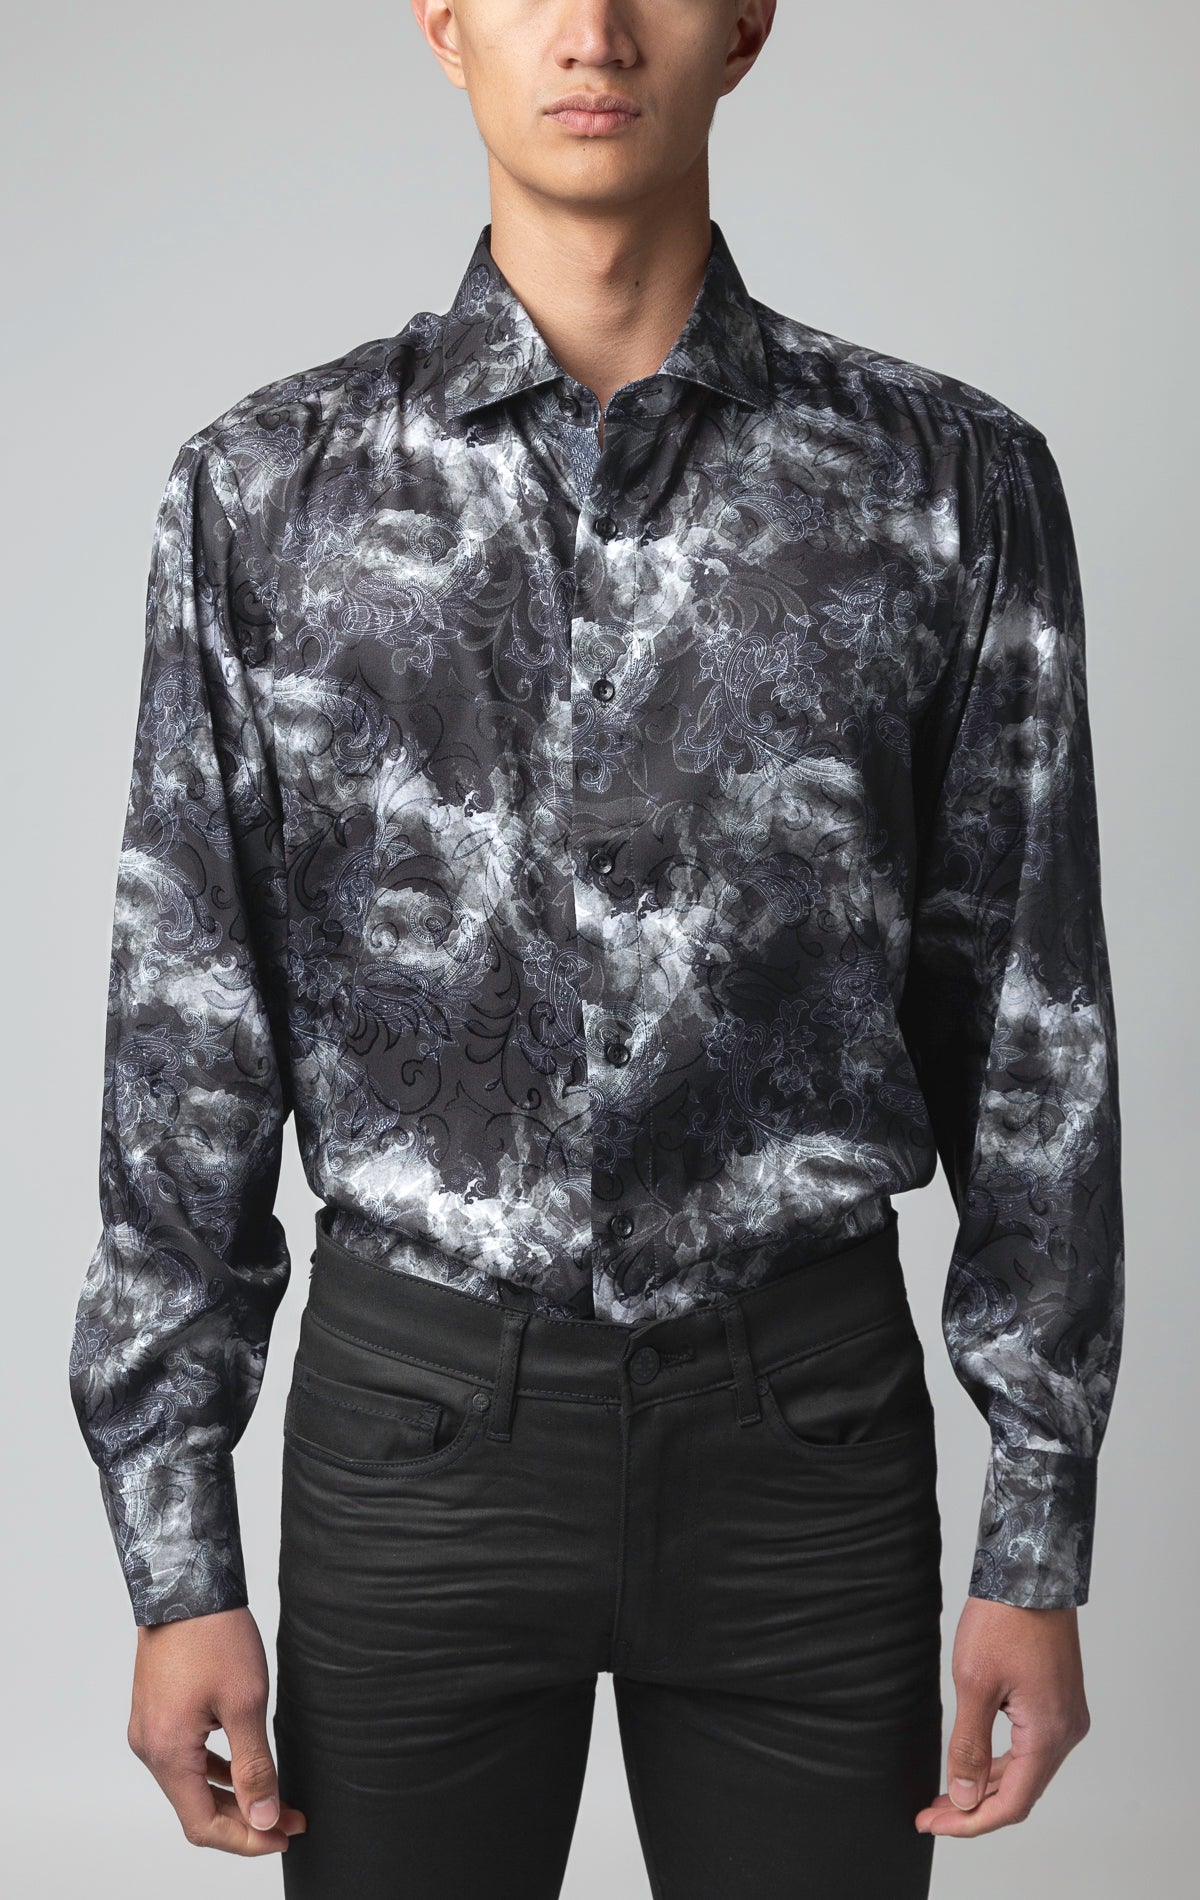 Button up - long sleeve stylish dress shirt.